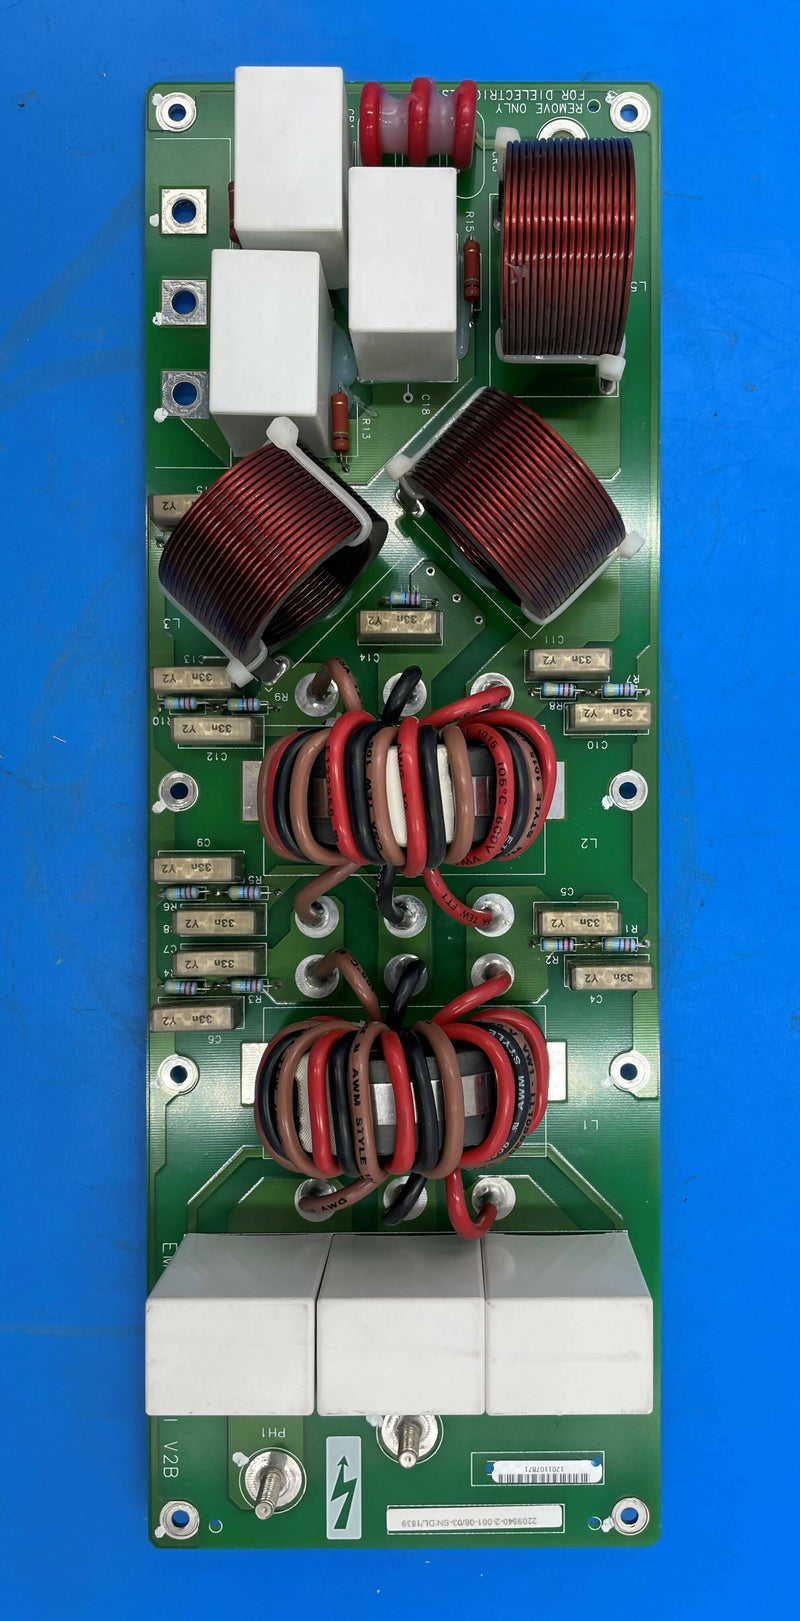 EMC Filter TRI_V2B BOARD (2209840-2-001) GE